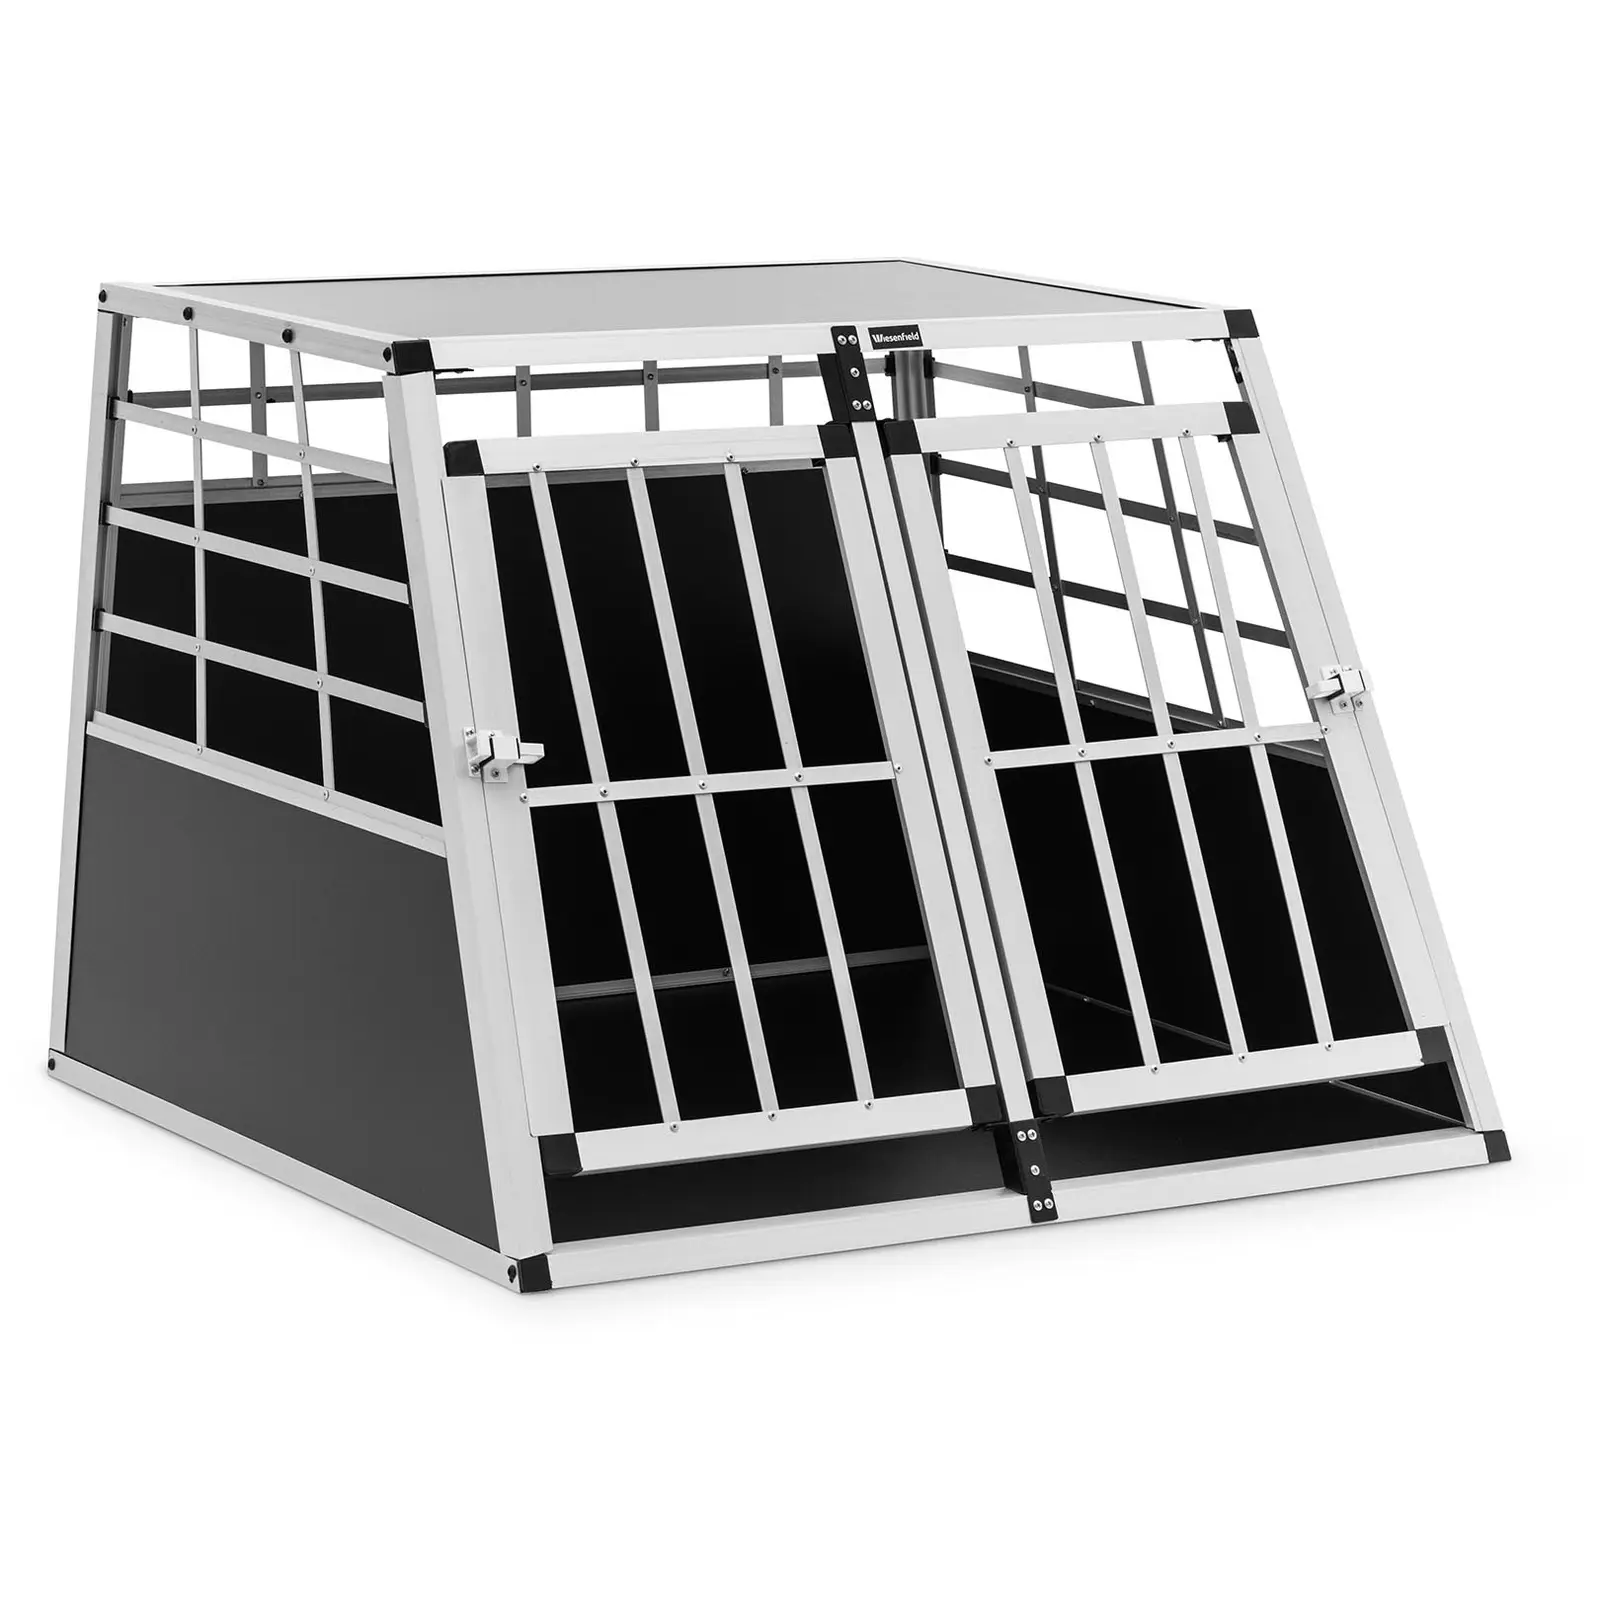 Trasportino per cani - Alluminio - Forma trapezoidale - 85 x 95 x 69 cm